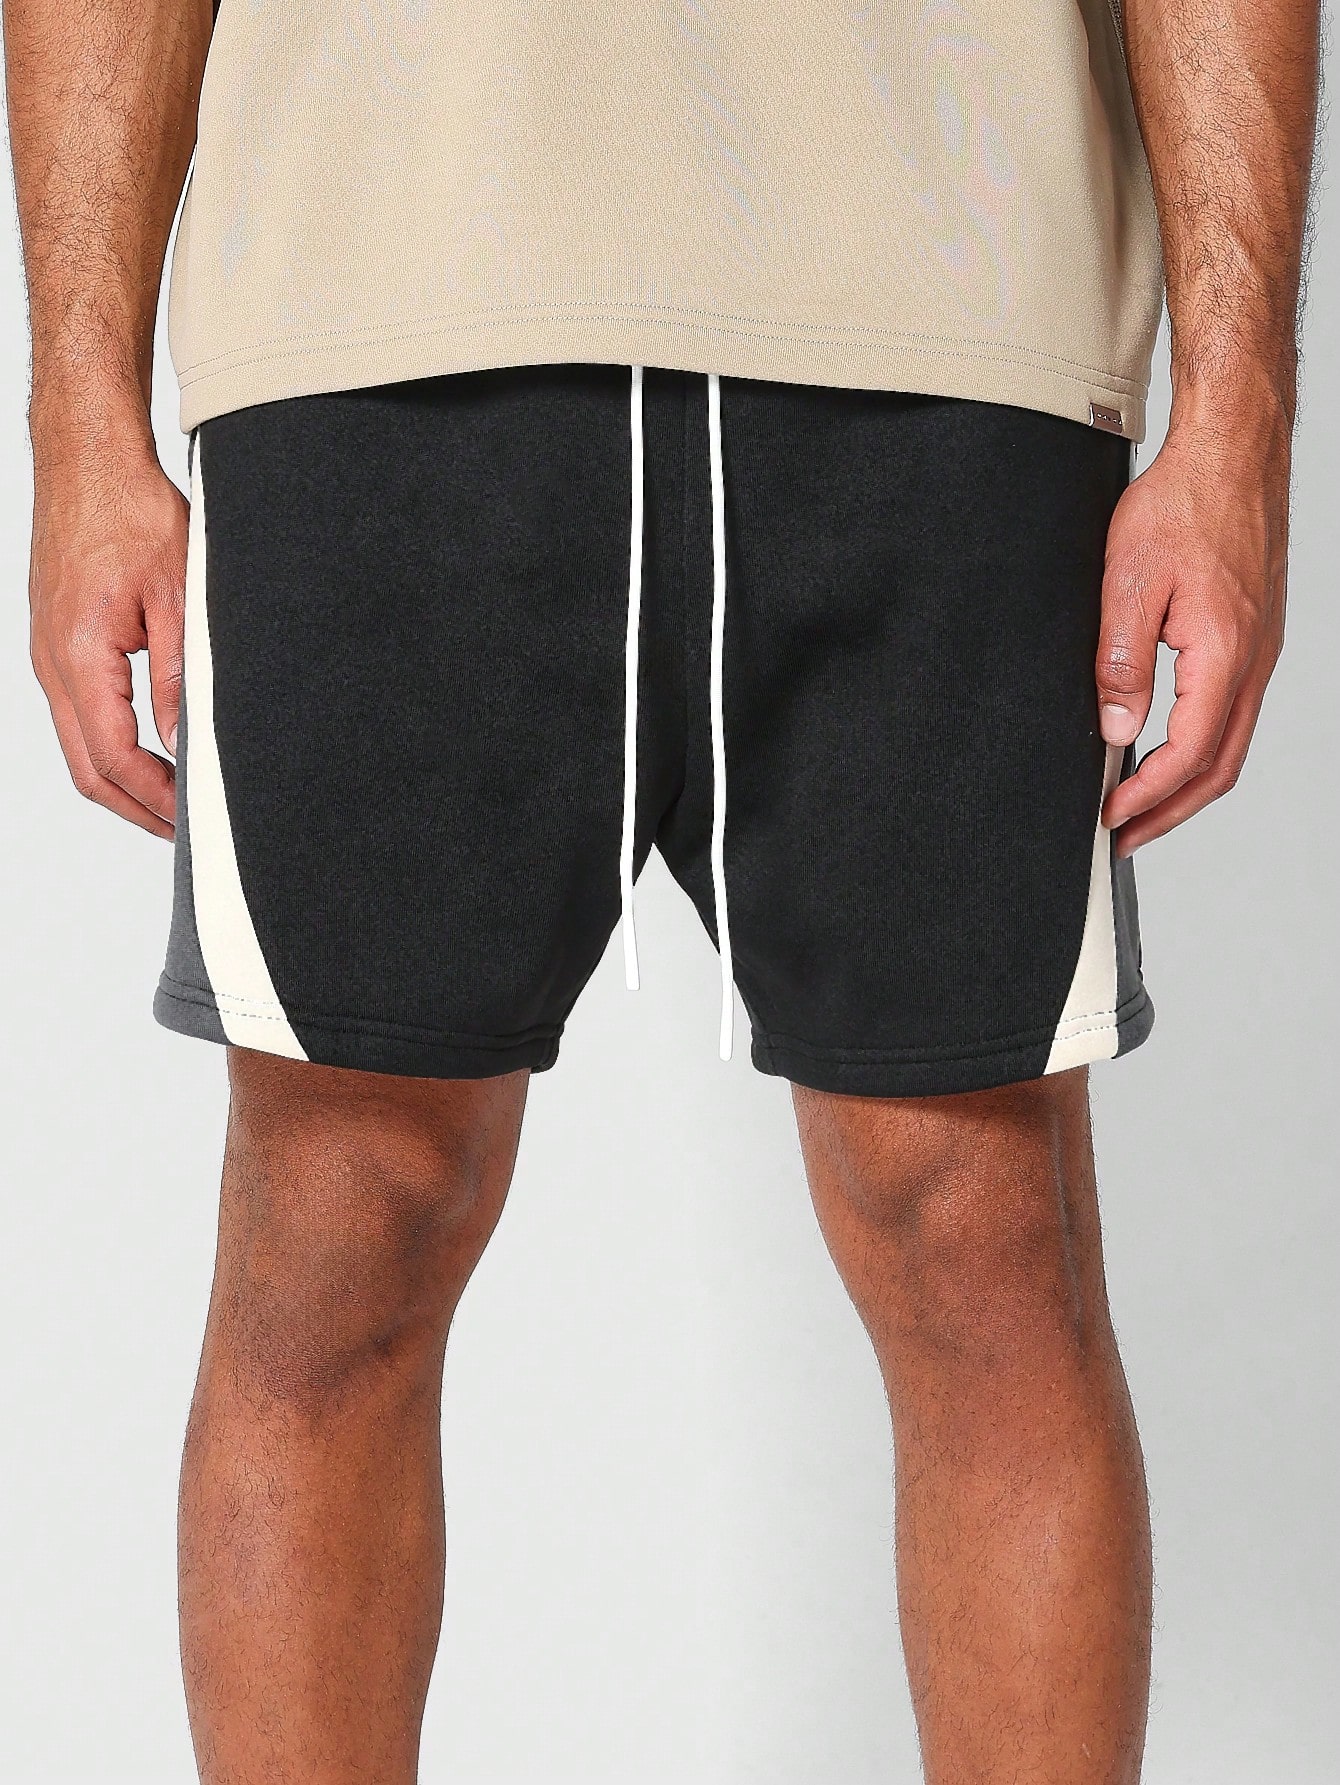 SUMWON Короткие шорты с заниженным шаговым швом и контрастными вставками, многоцветный